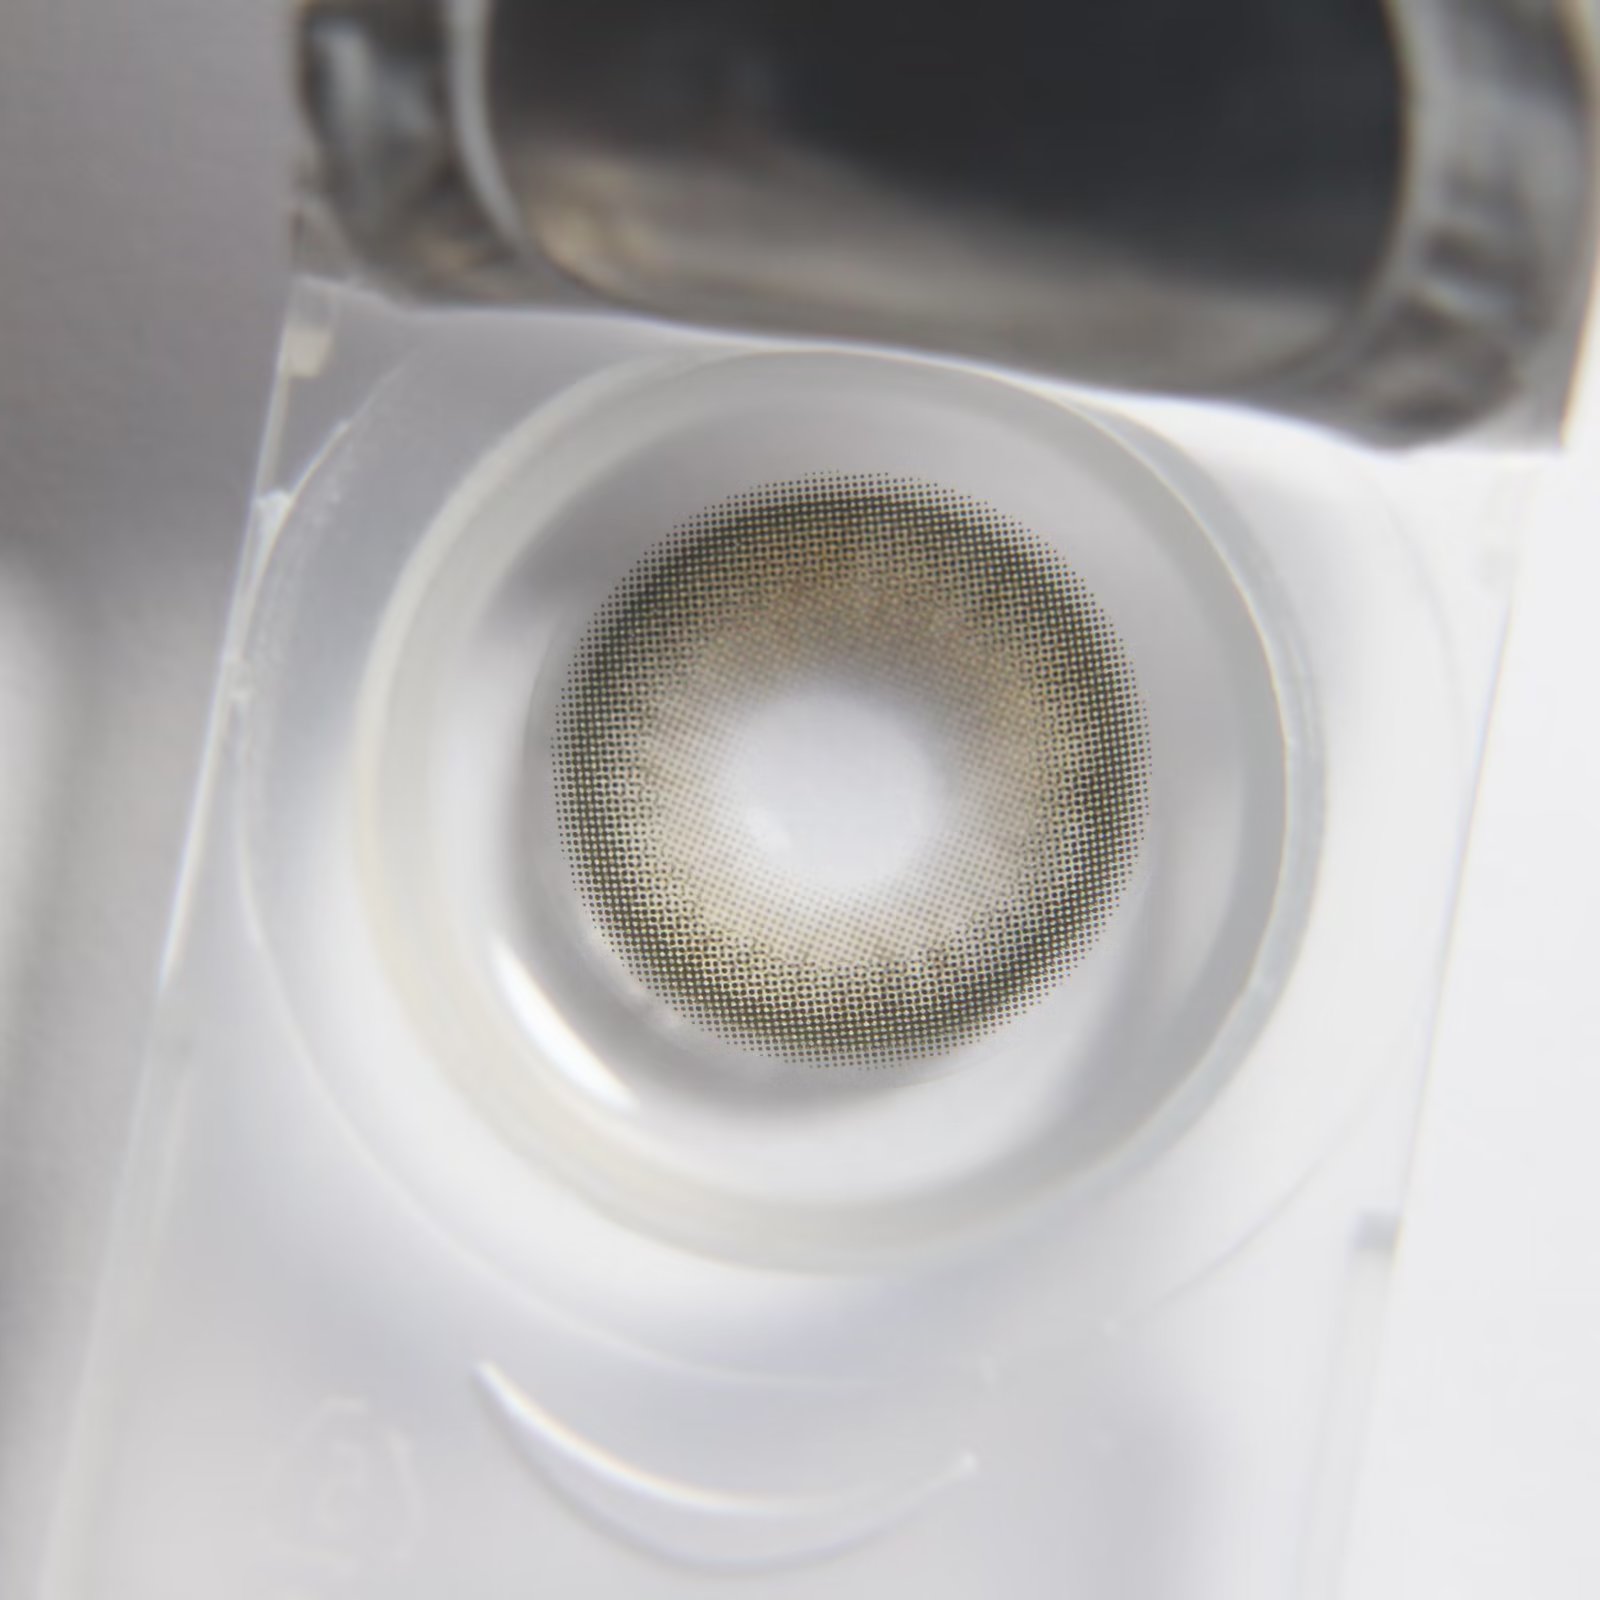 GINOMII 半年抛隐形眼镜 AOV卡其 14.5mm 1副/2片 左右度数可不同 - VVCON美瞳网